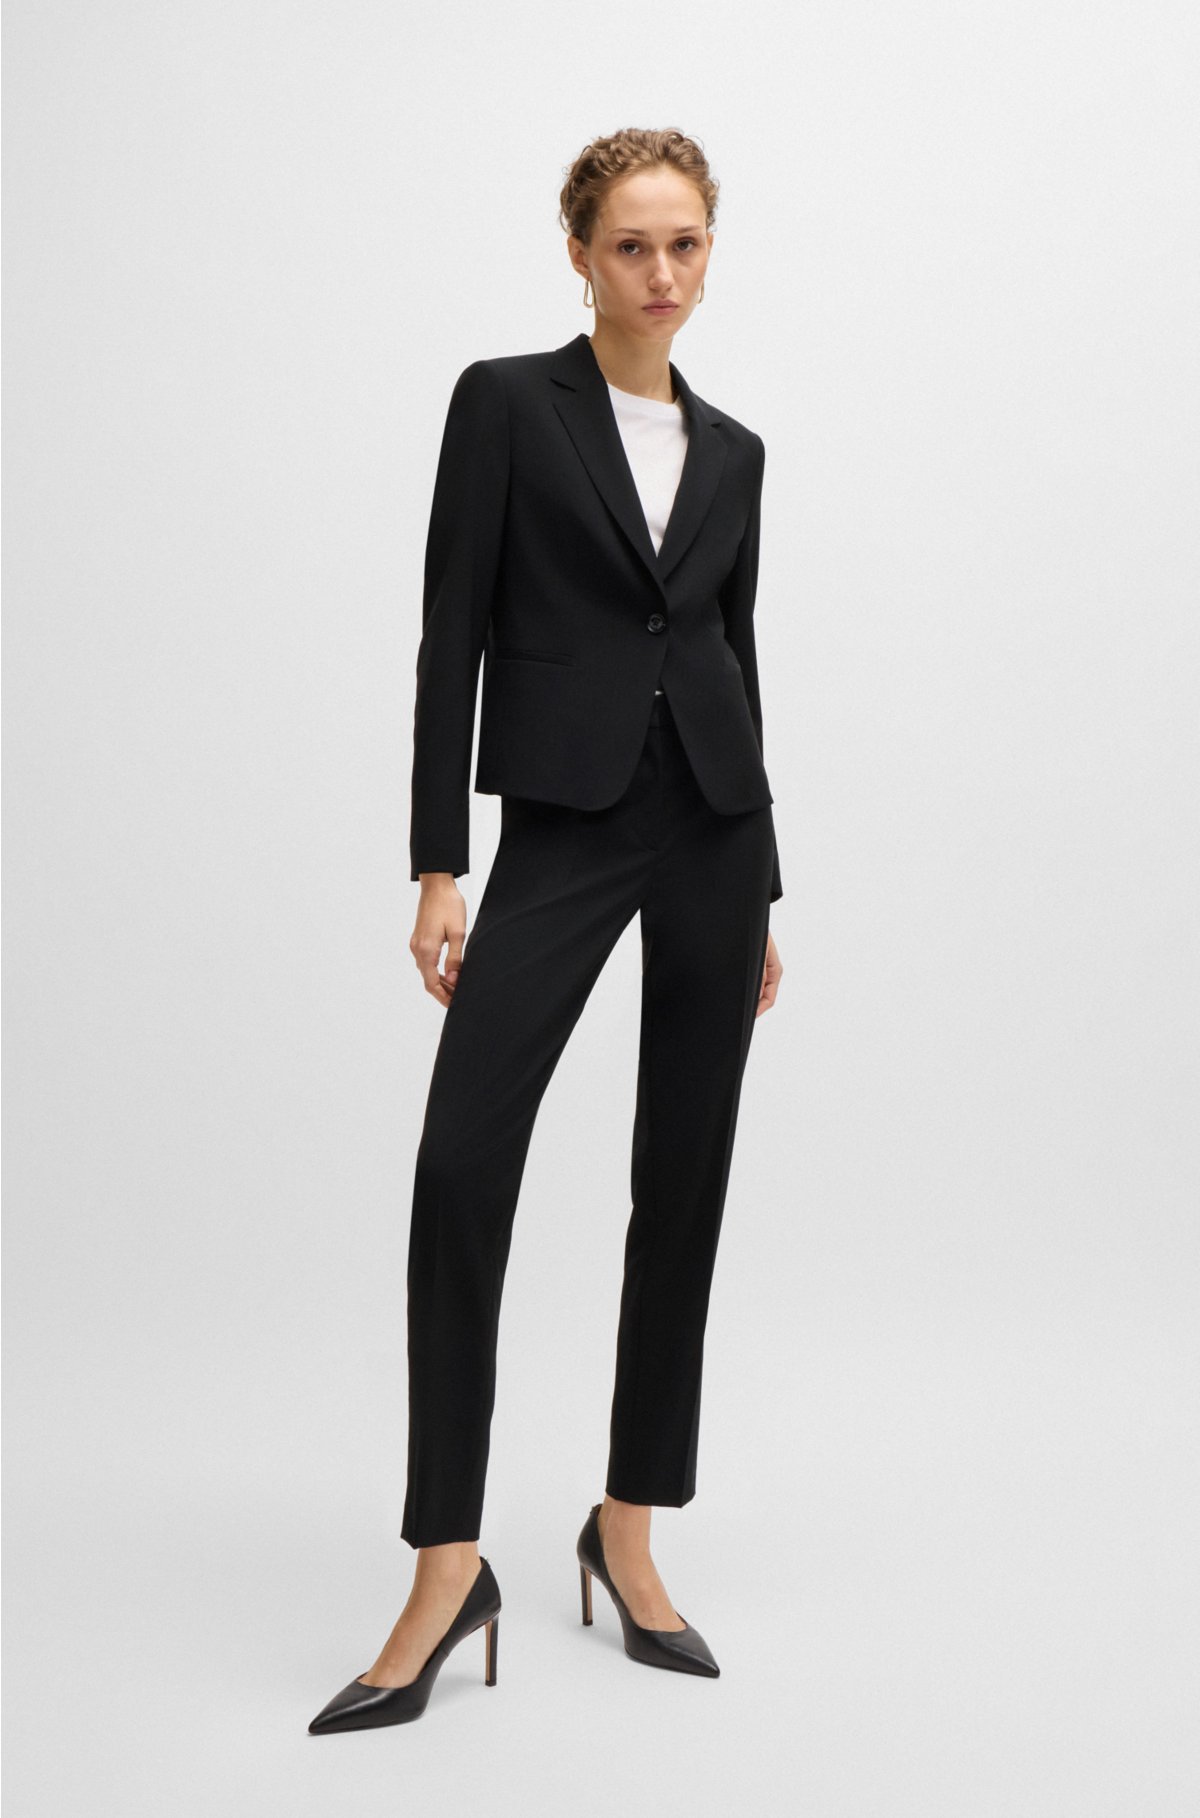 Louis Vuitton Black Wool Structured Tuxedo Blazer Jacket Size 8/40